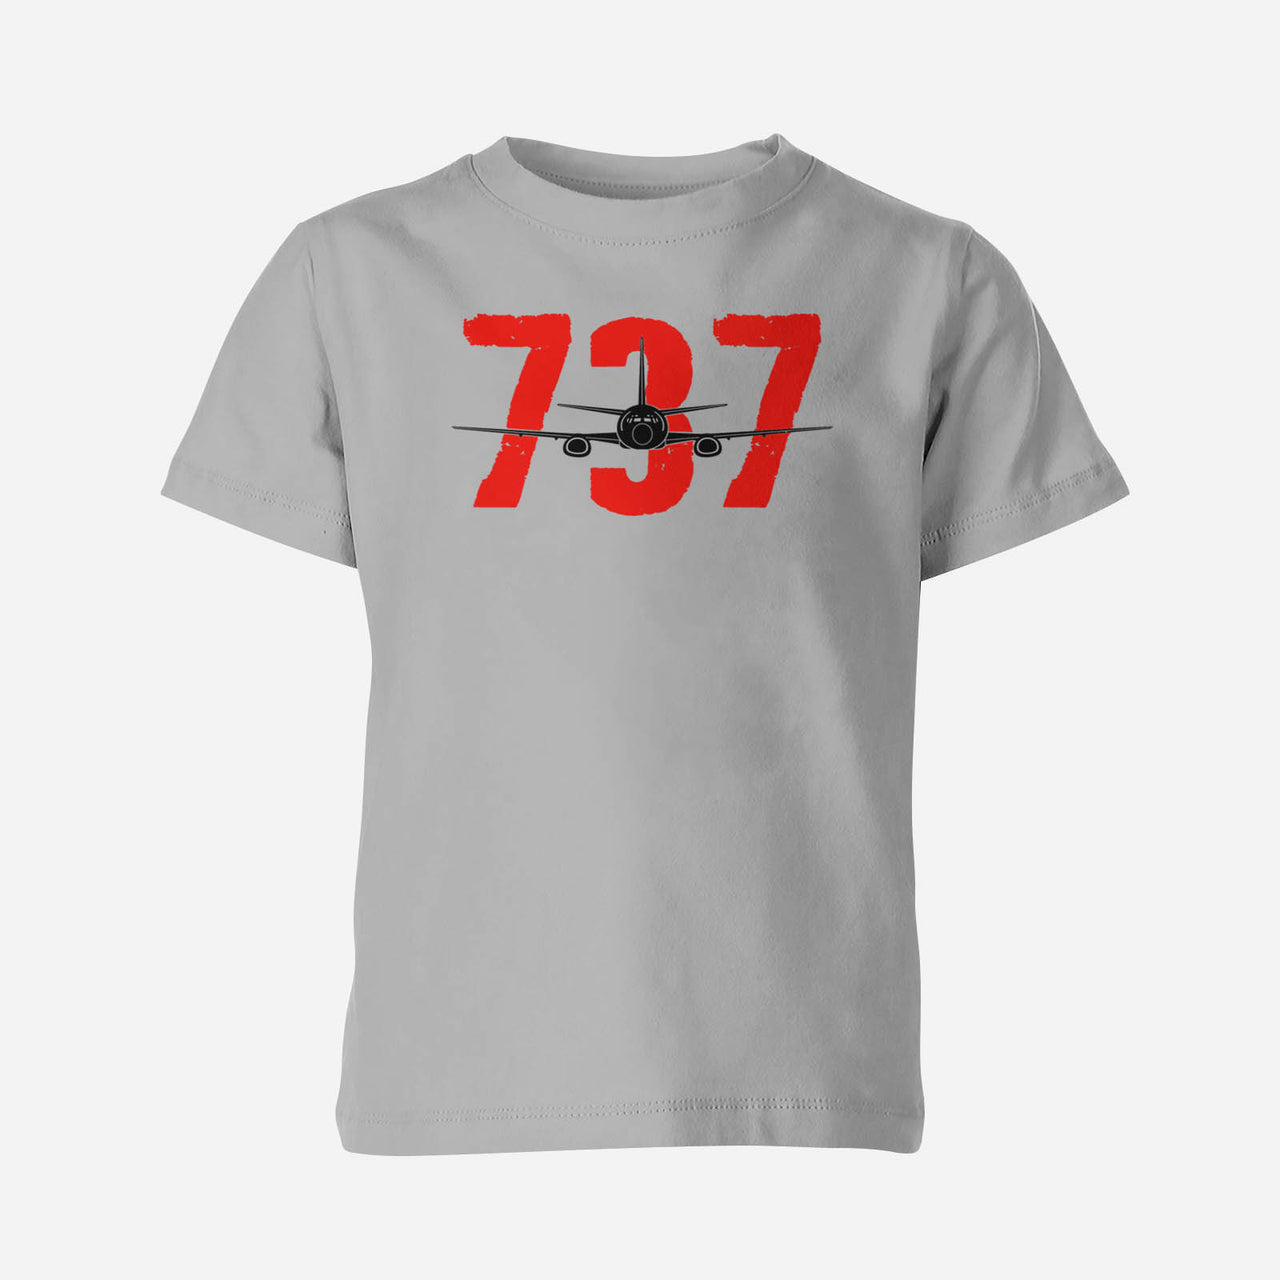 Boeing 737 Designed Children T-Shirts